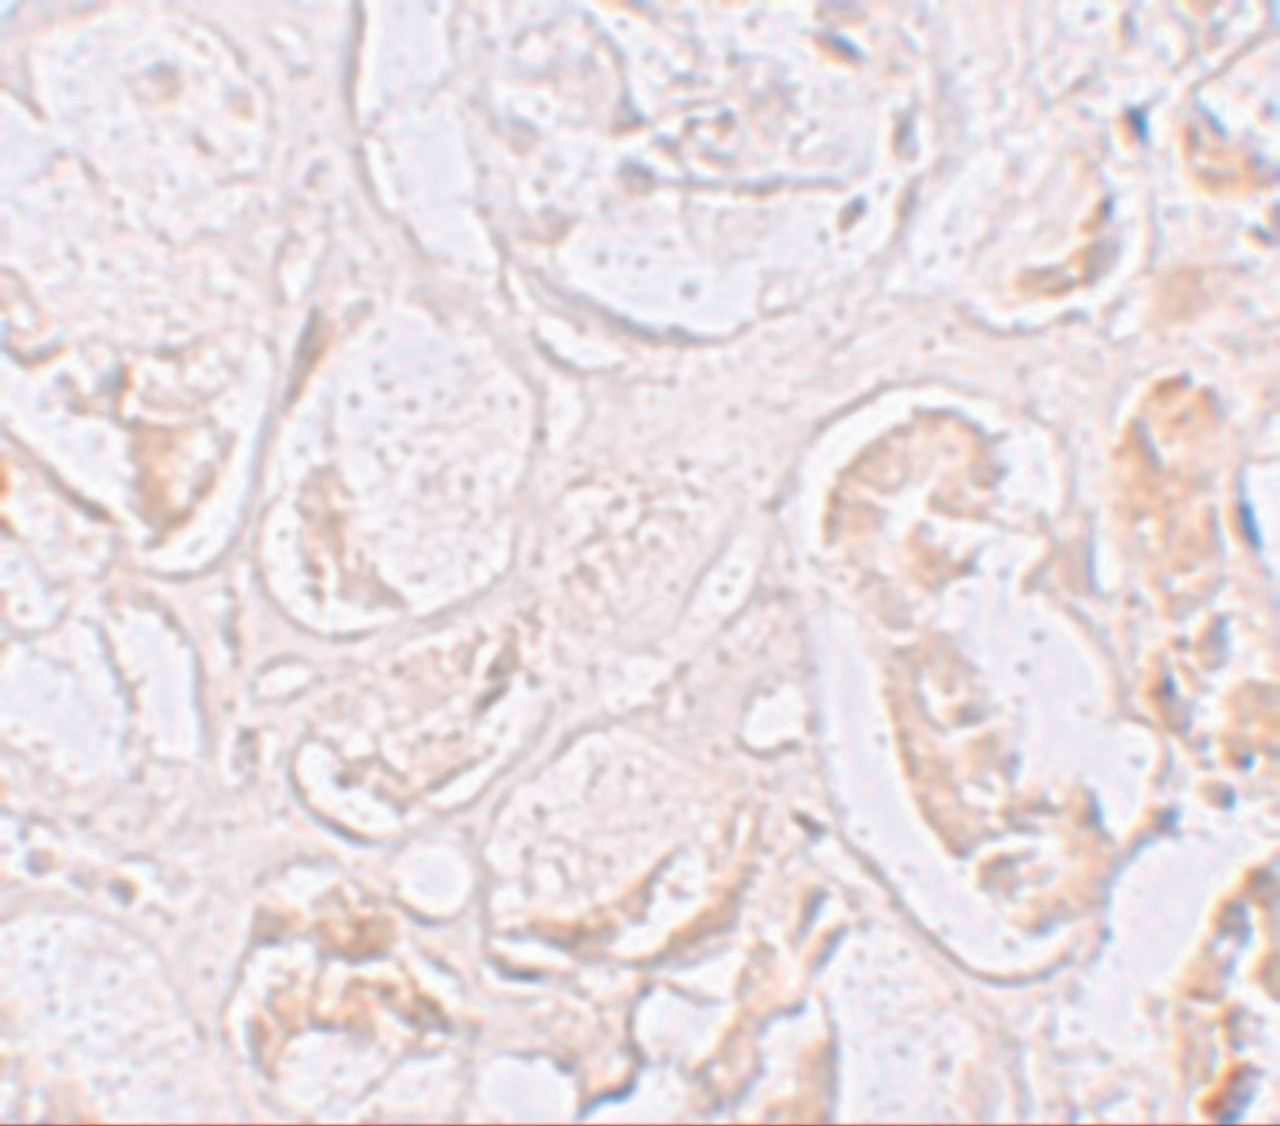 Immunohistochemistry of SLAMF9 in human kidney tissue with SLAMF9 antibody at 2.5 ug/mL.